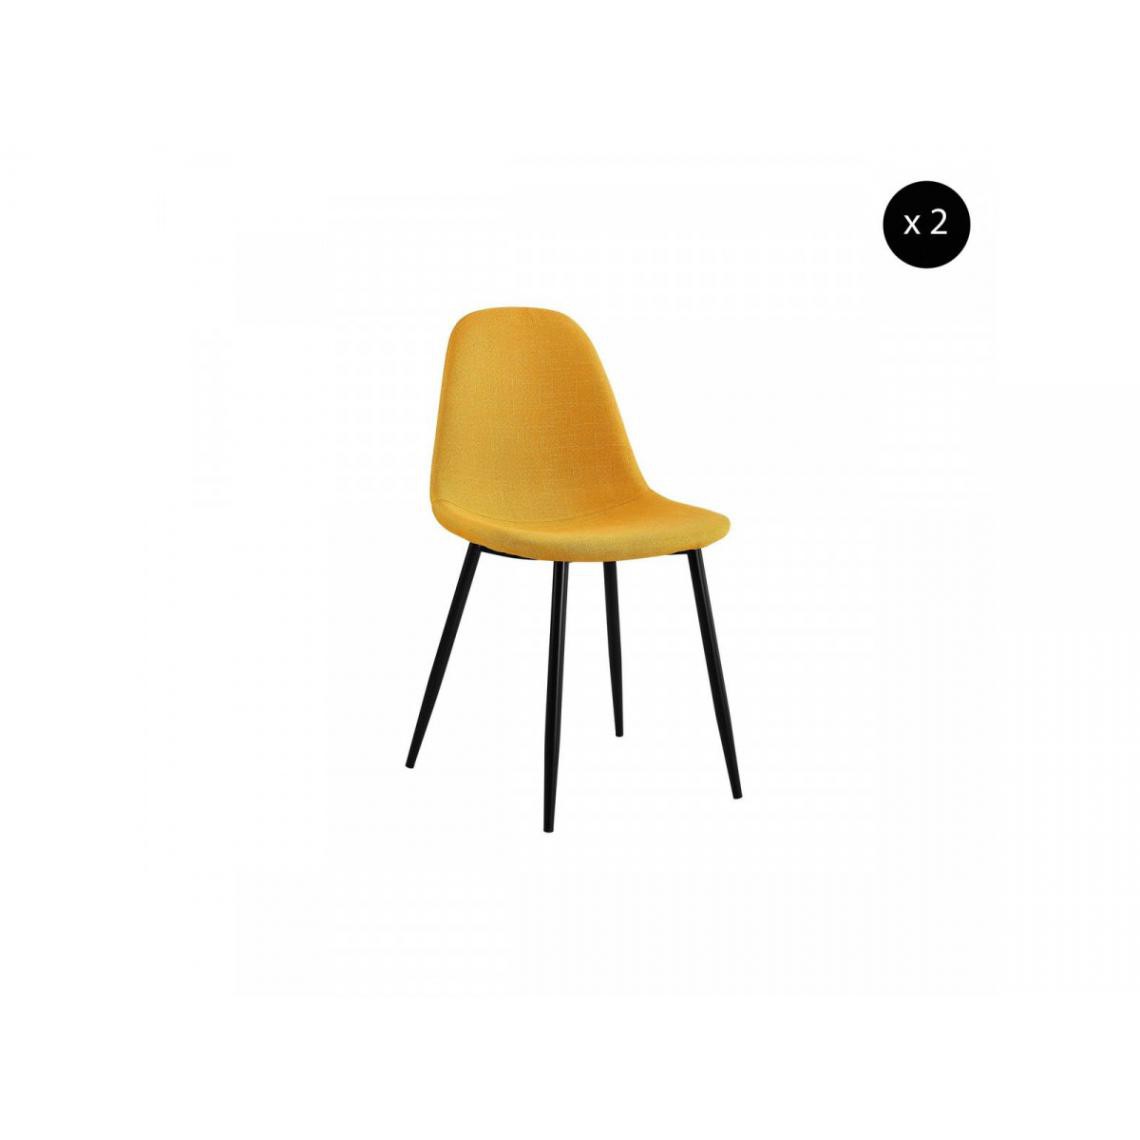 Bobochic - BOBOCHIC Lot de 2 chaises en tissu jaune APLO métal noir - Chaises